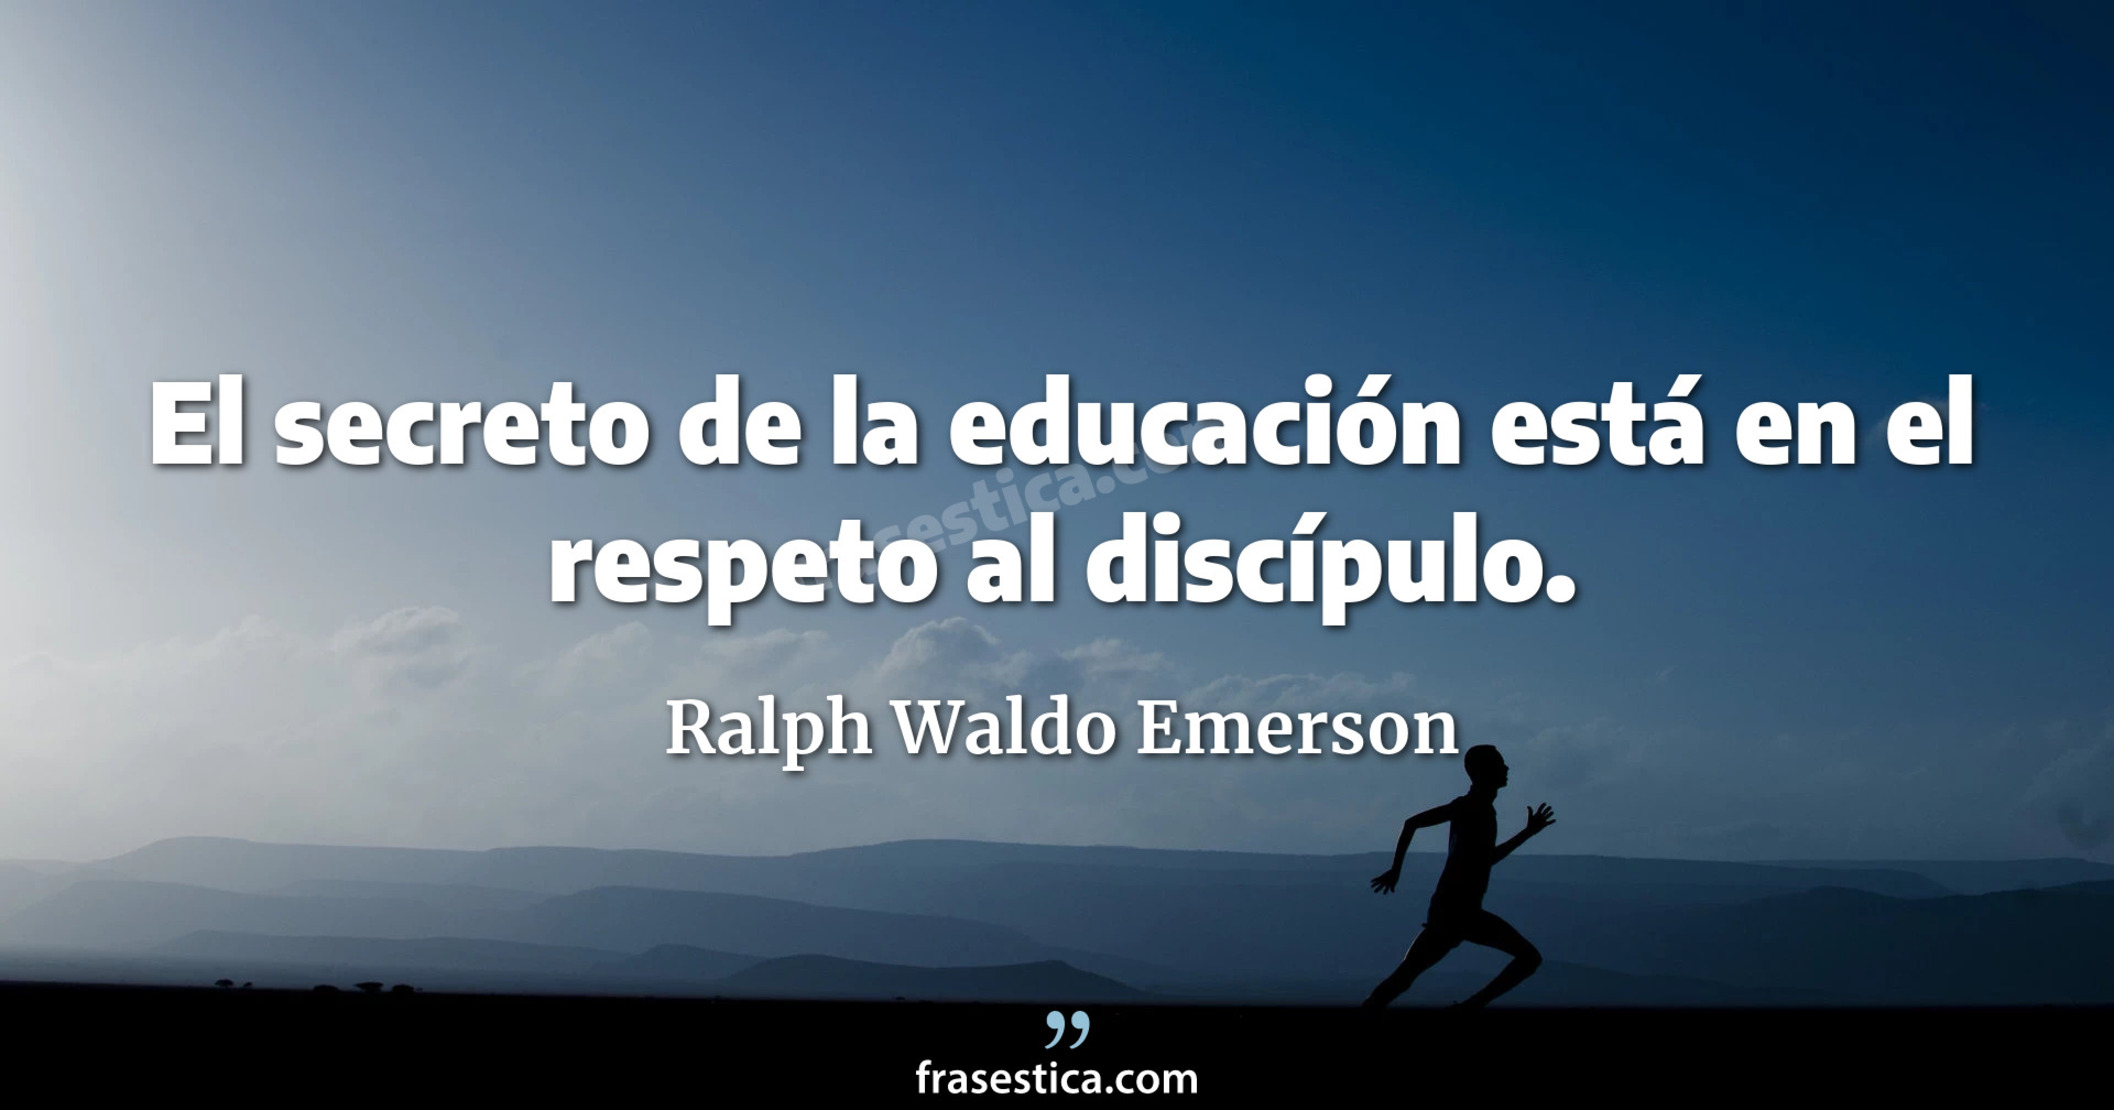 El secreto de la educación está en el respeto al discípulo. - Ralph Waldo Emerson